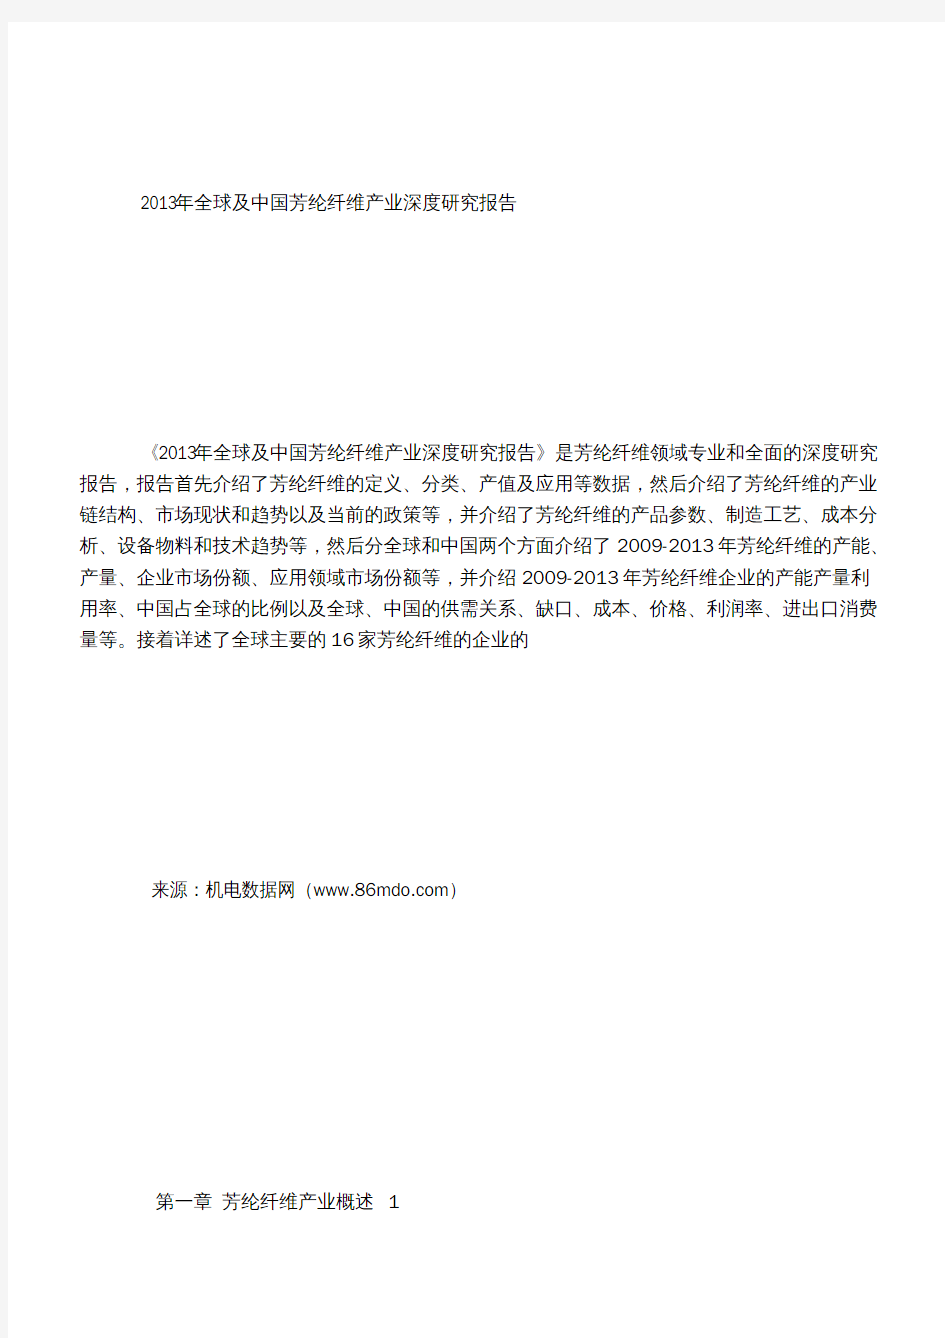 2013年全球及中国芳纶纤维产业深度研究报告